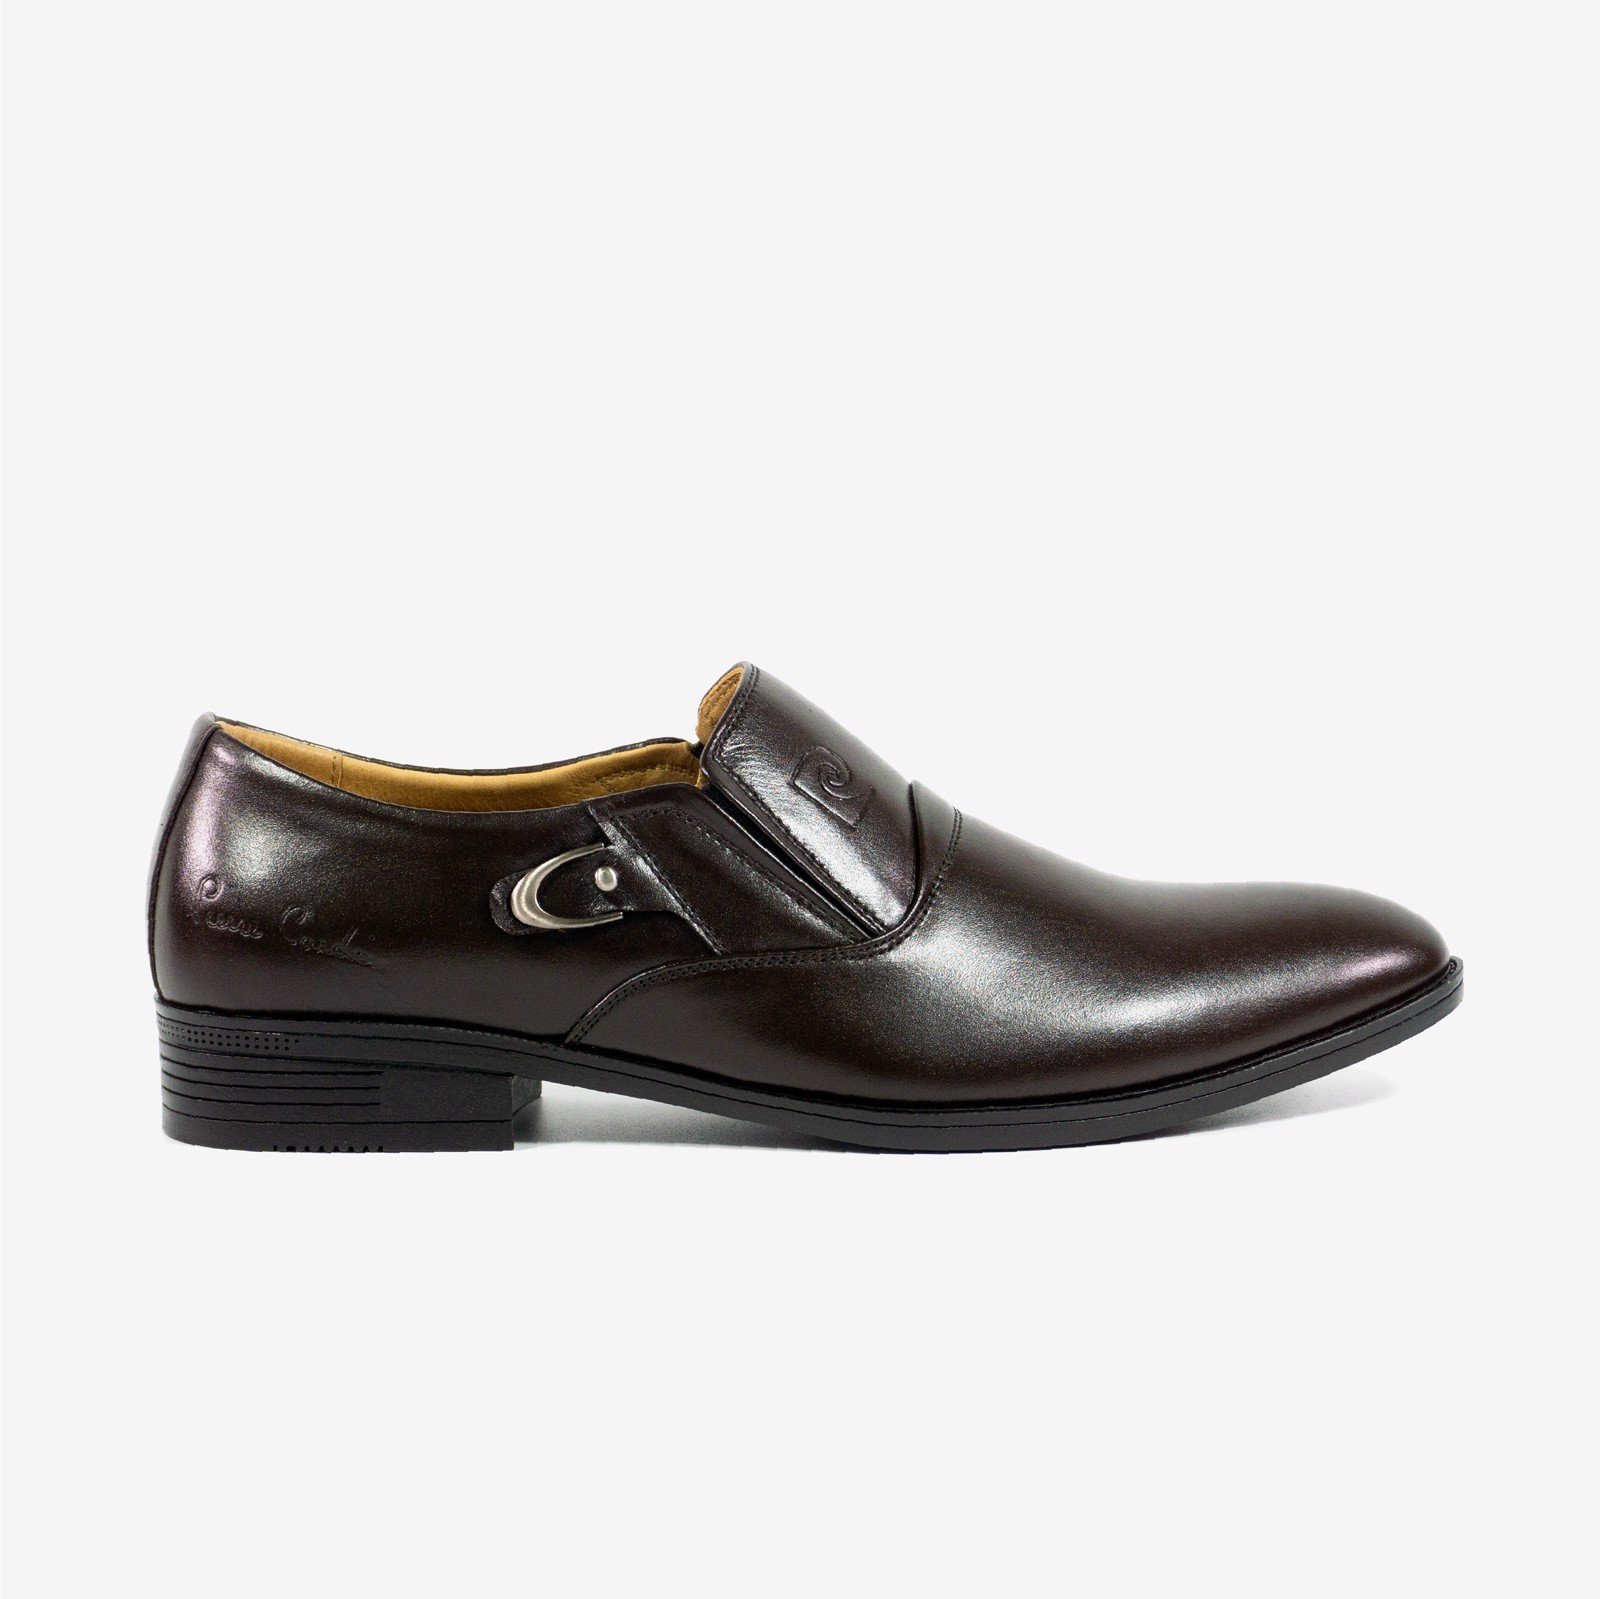 Giày lười da nam Pierre Cardin với thiết kế logo đẹp mắt, kiểu dáng ôm chân, hiện đại - PCMFWL 765